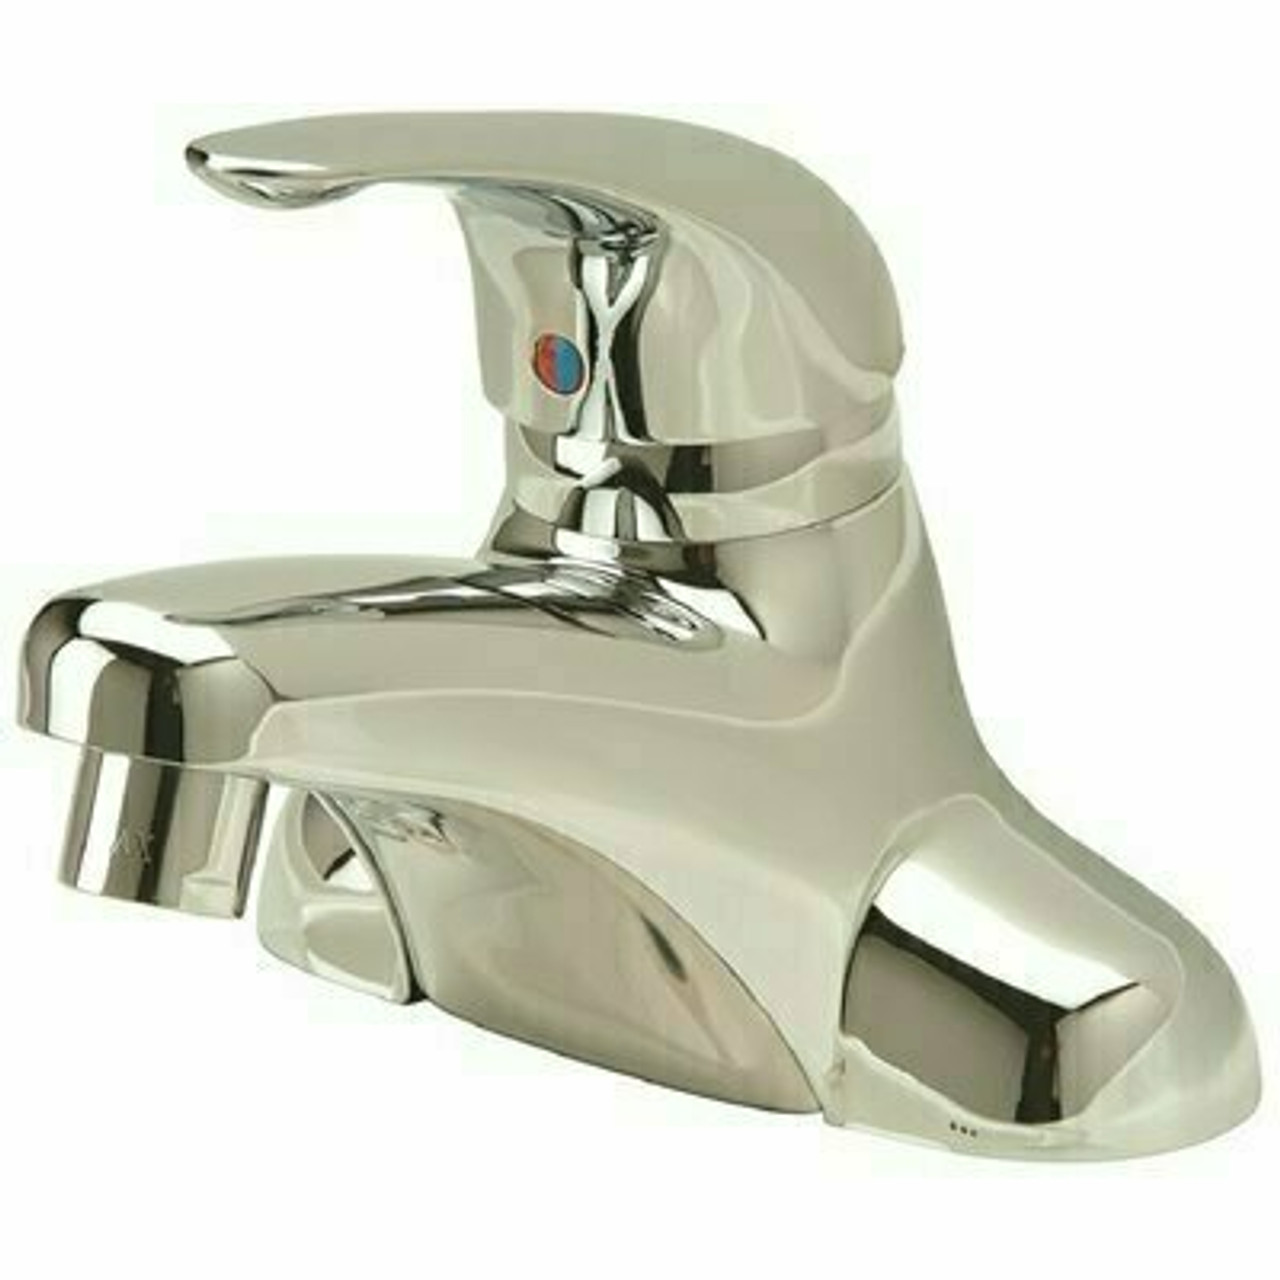 Zurn Aquaspec 4 In. Centerset Single-Handle Low-Arc Bathroom Faucet In Chrome